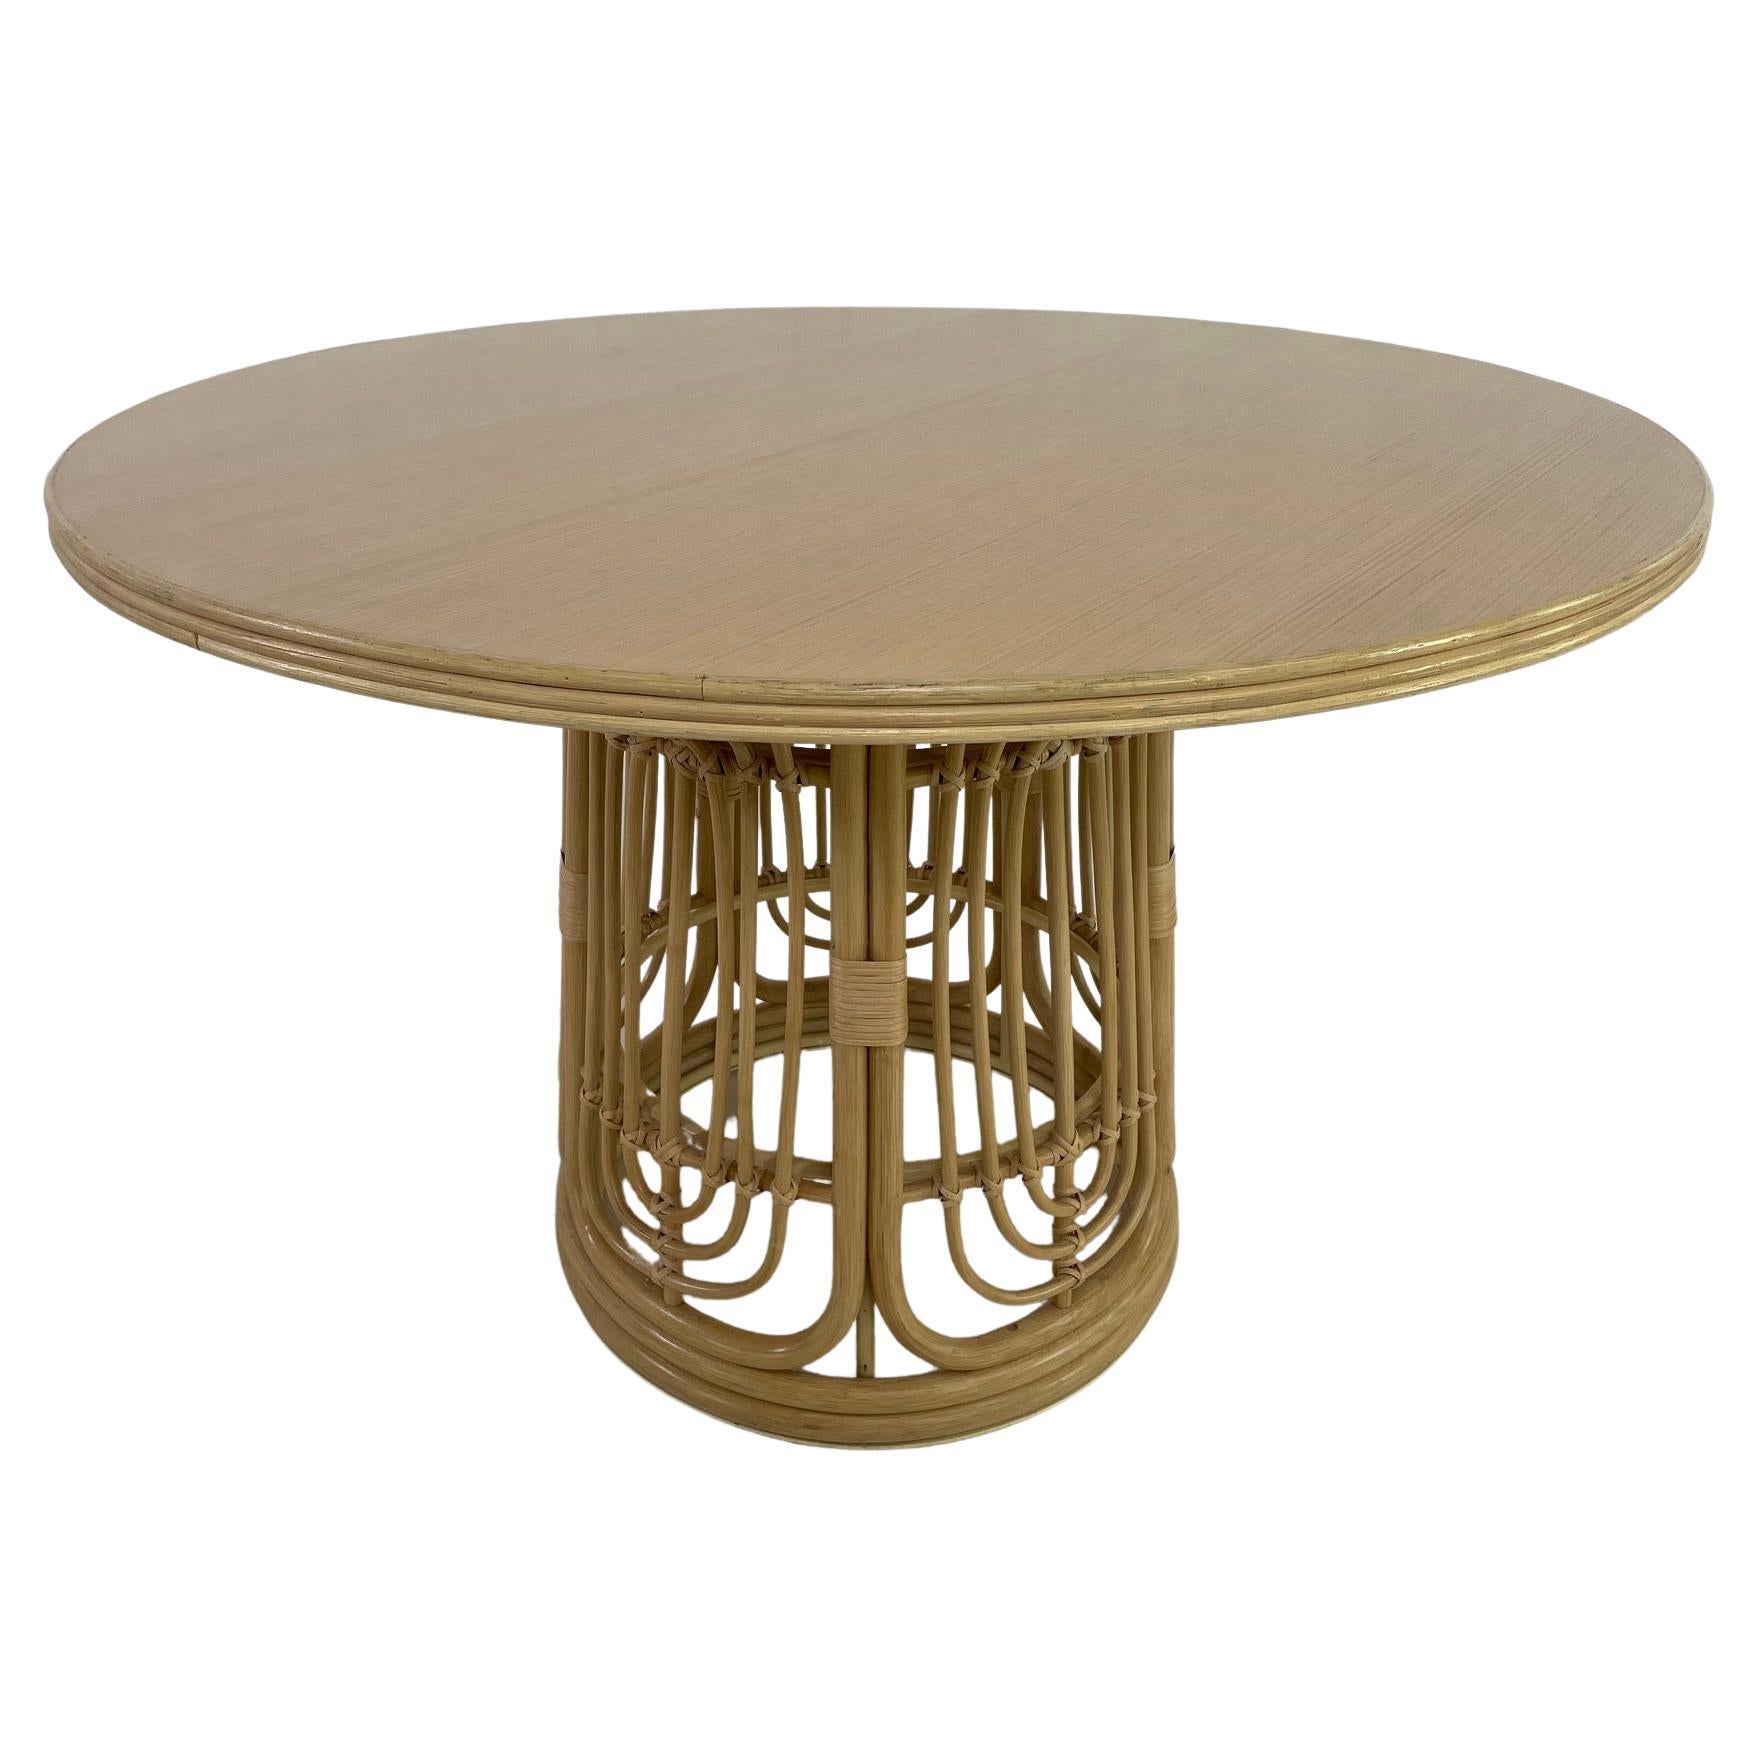 Table cannelée à base ronde en rotin et plateau en bois, piédestal pour salle à manger, style design des années 1970